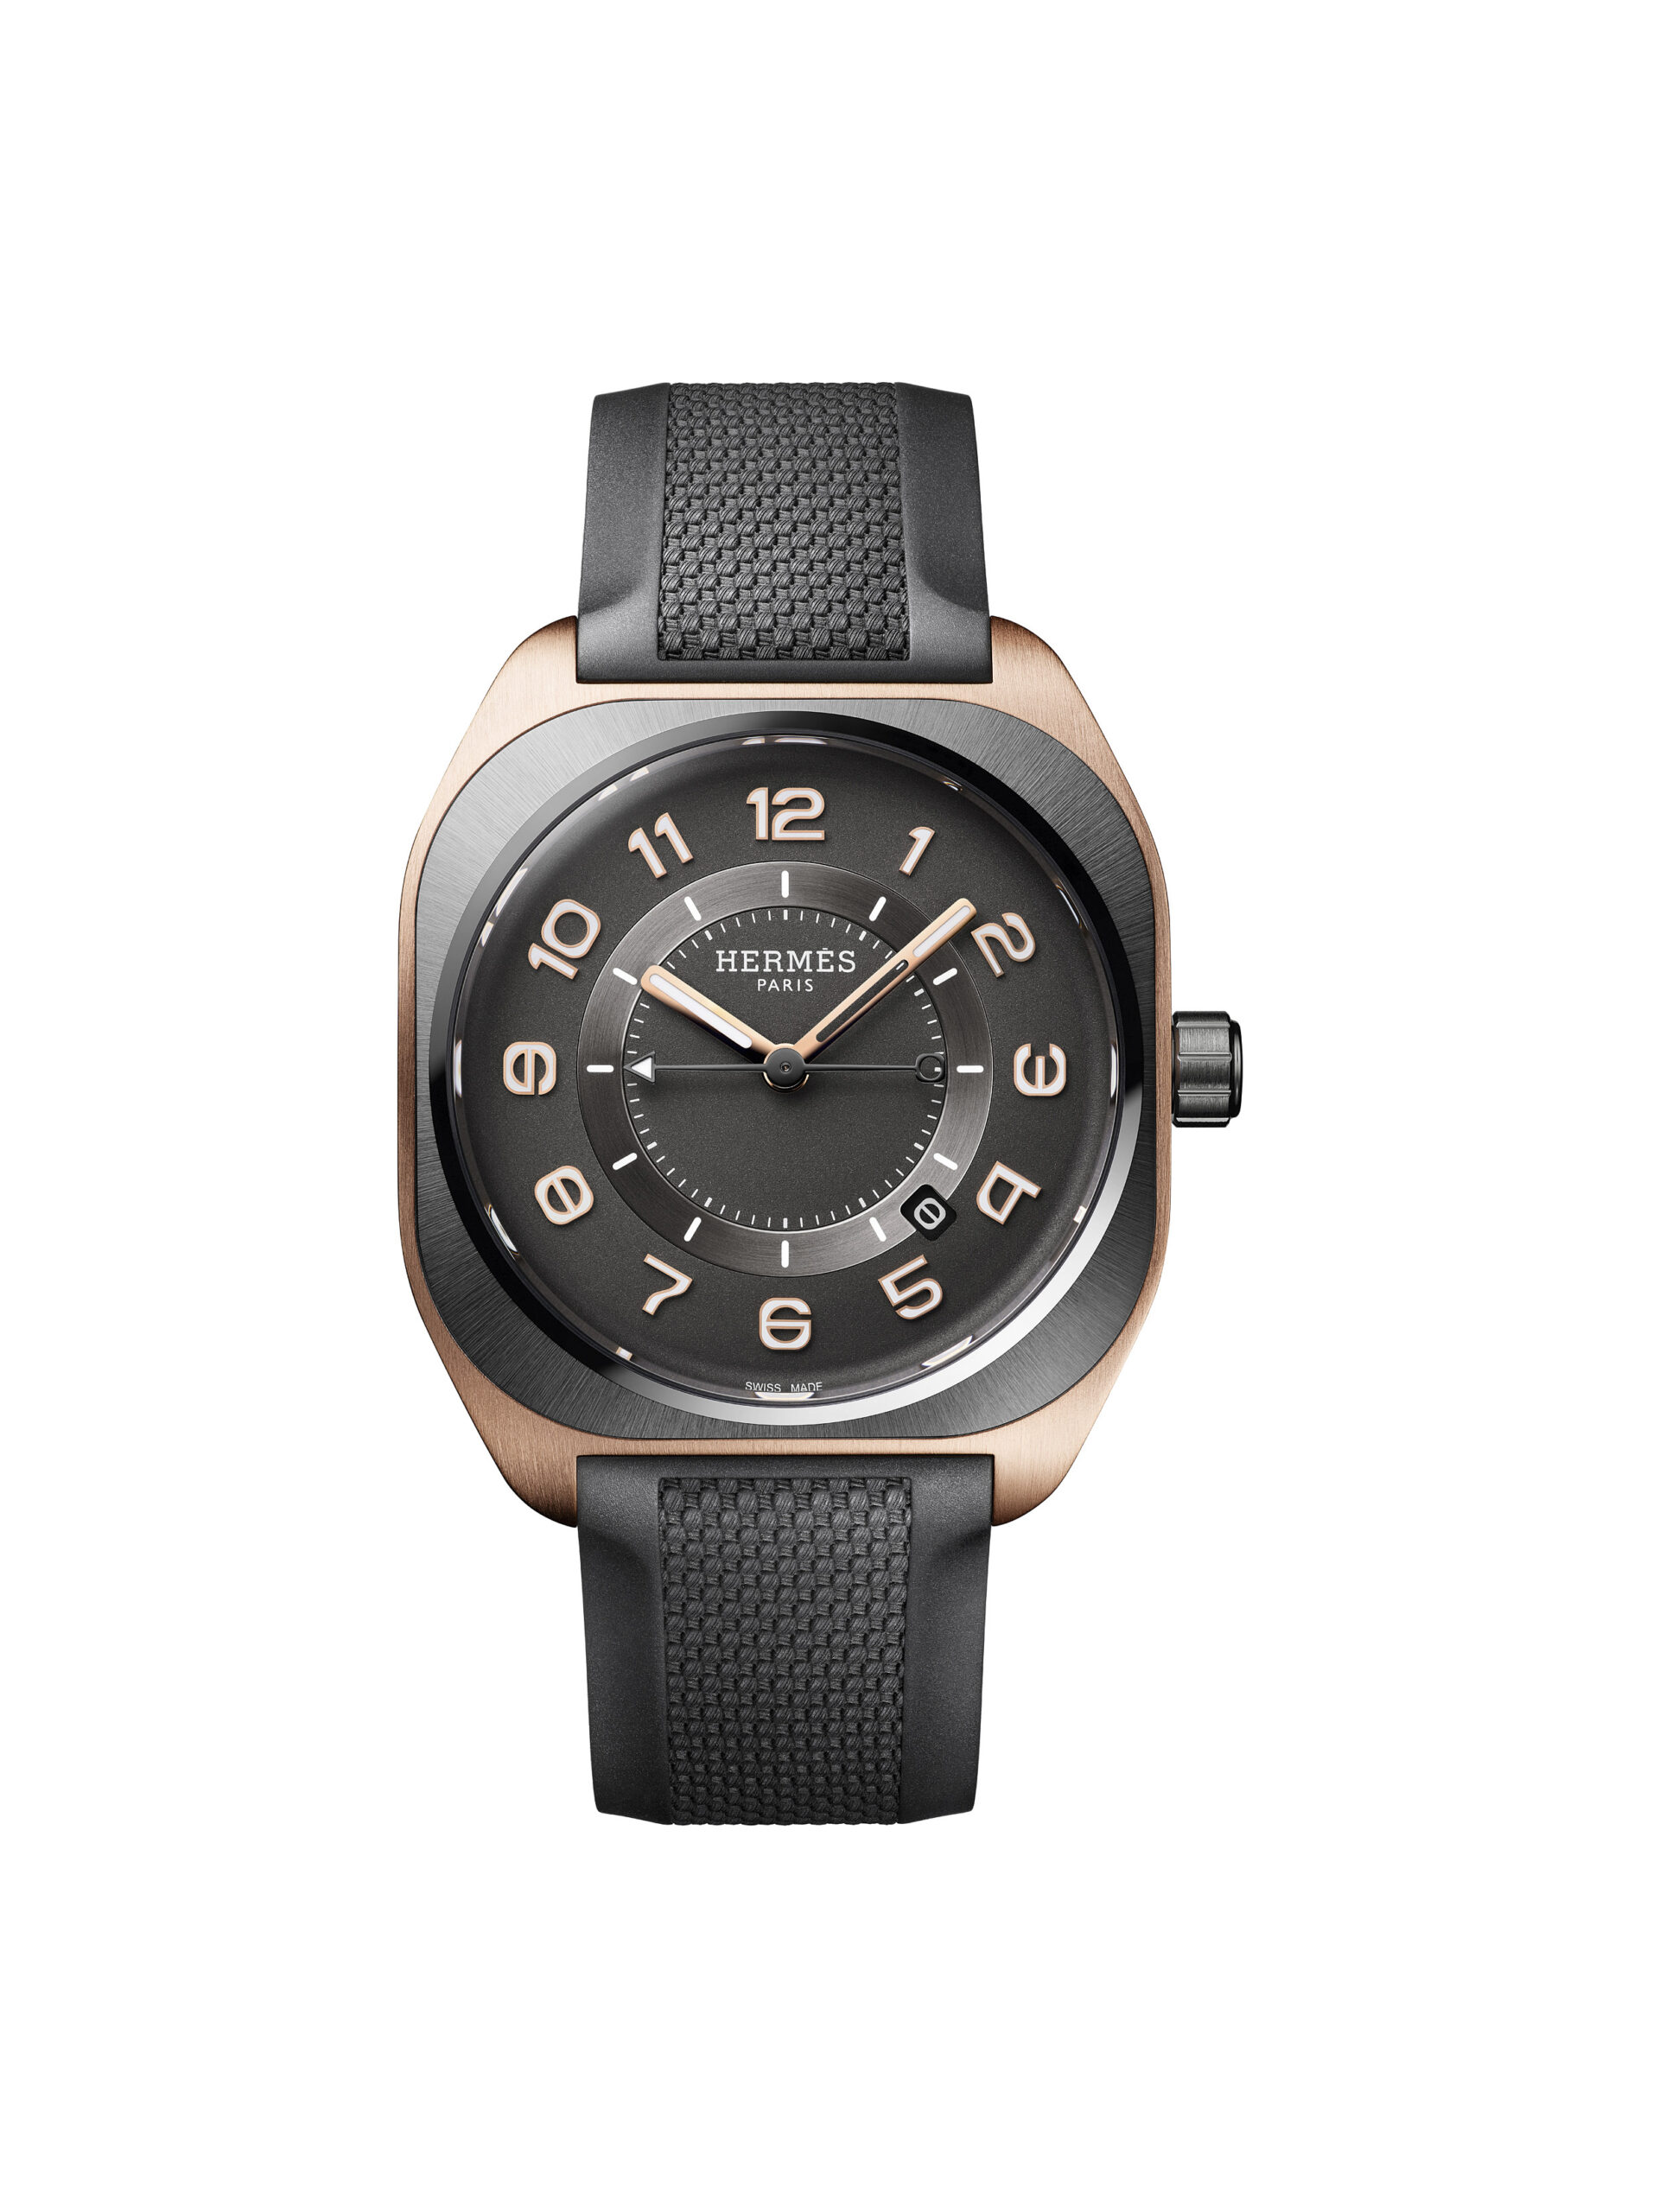 Hermès Hermès H08 watch in titanium and rose gold, band in rubber